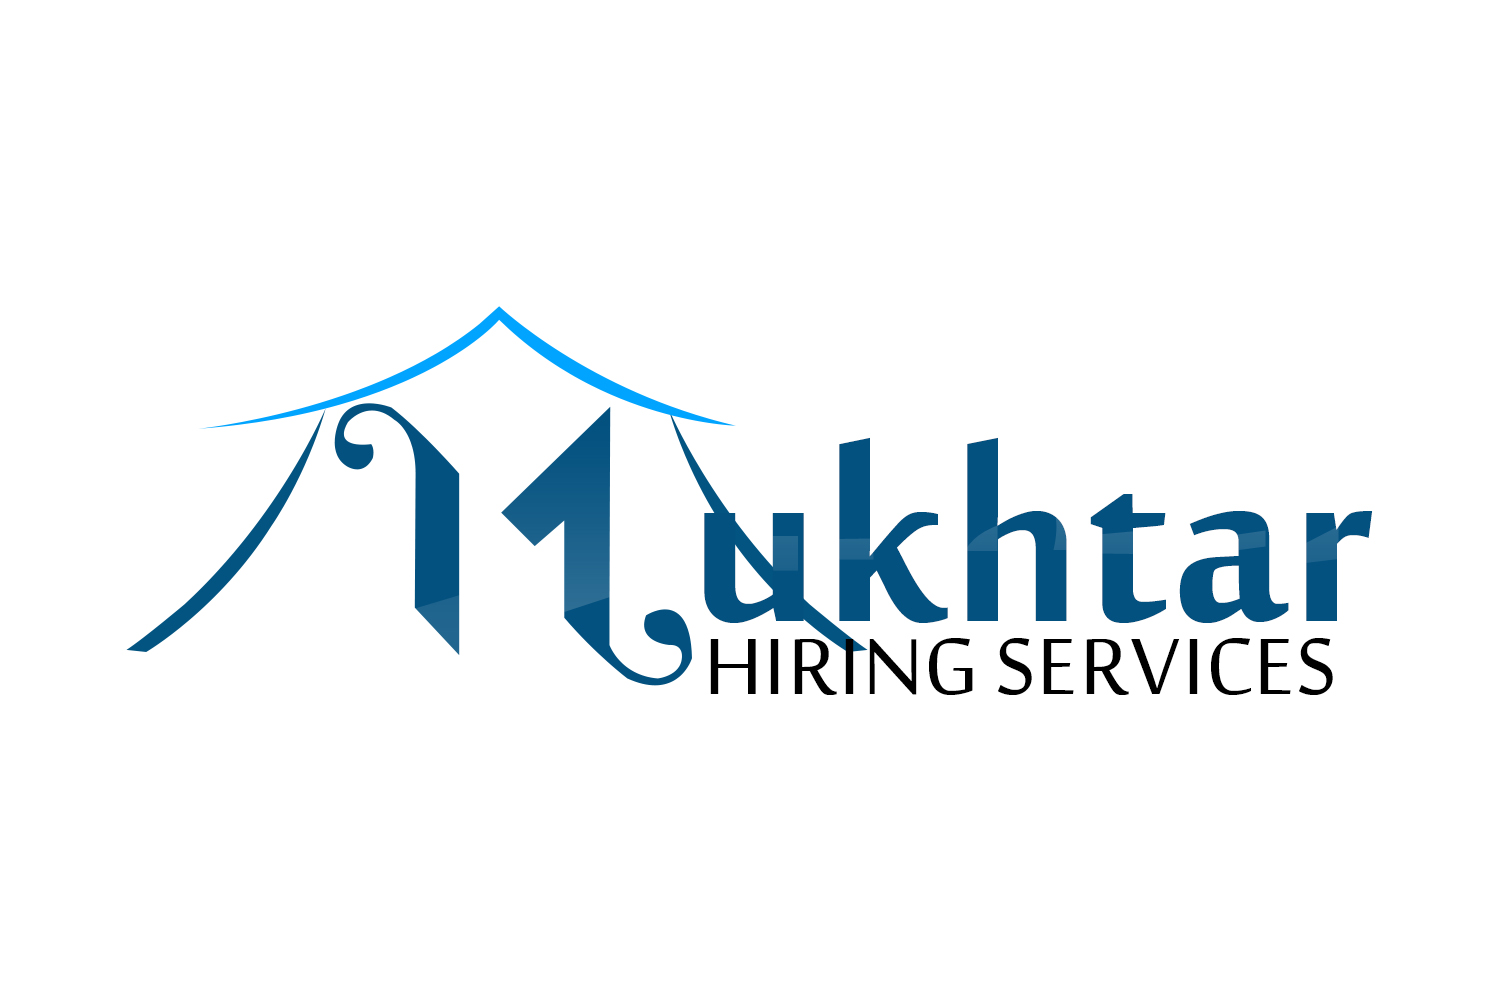 Mukhtar Hiring Services - nichemarket